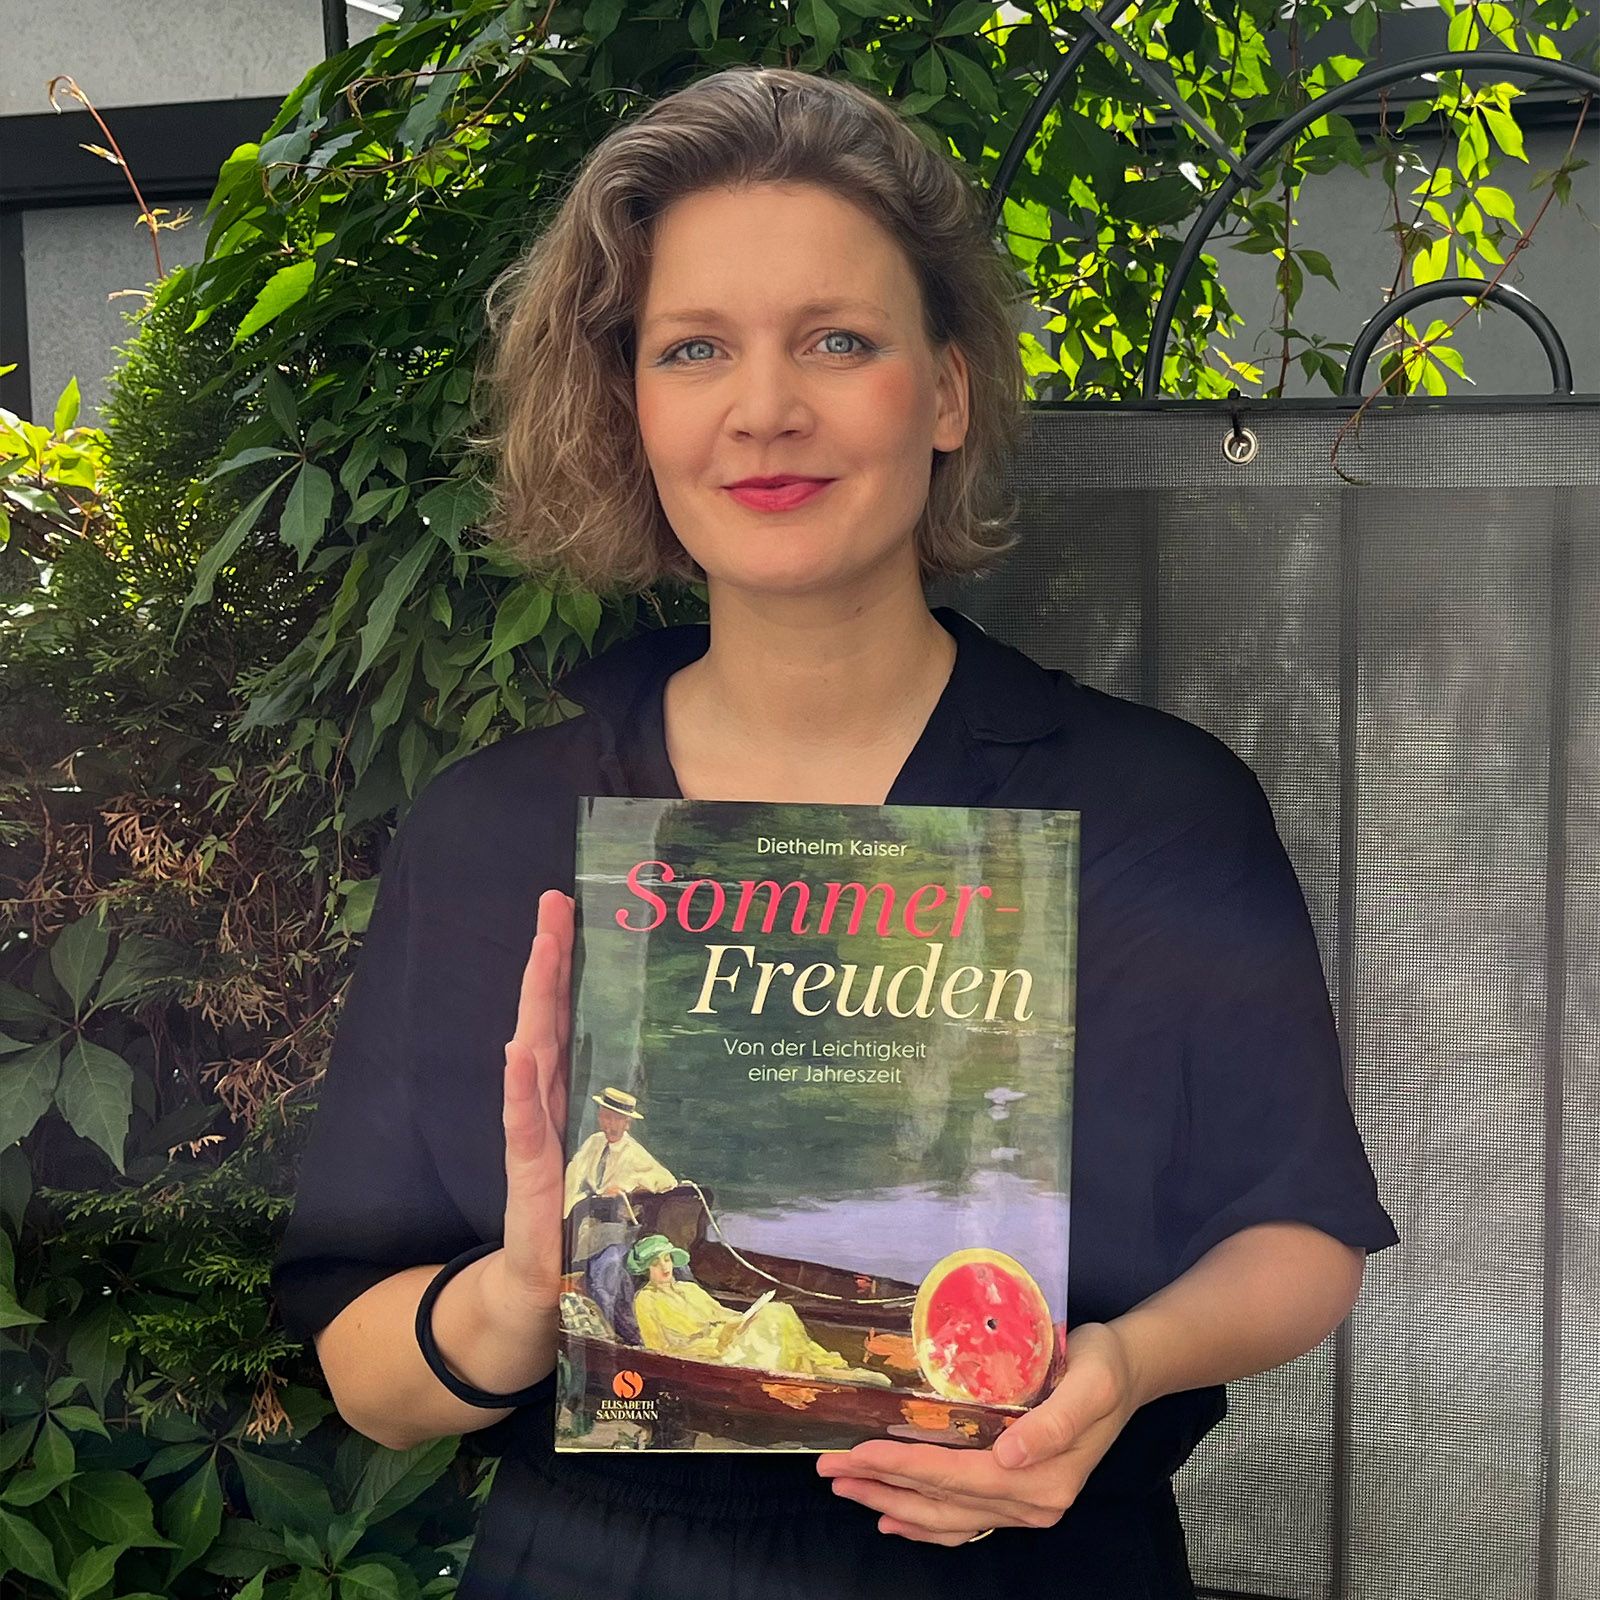 Anne Stukenborg (Elisabeth Sandmann Verlag) empfiehlt Diethelm Kaiser, Sommer-Freuden: Von der Leichtigkeit einer Jahreszeit